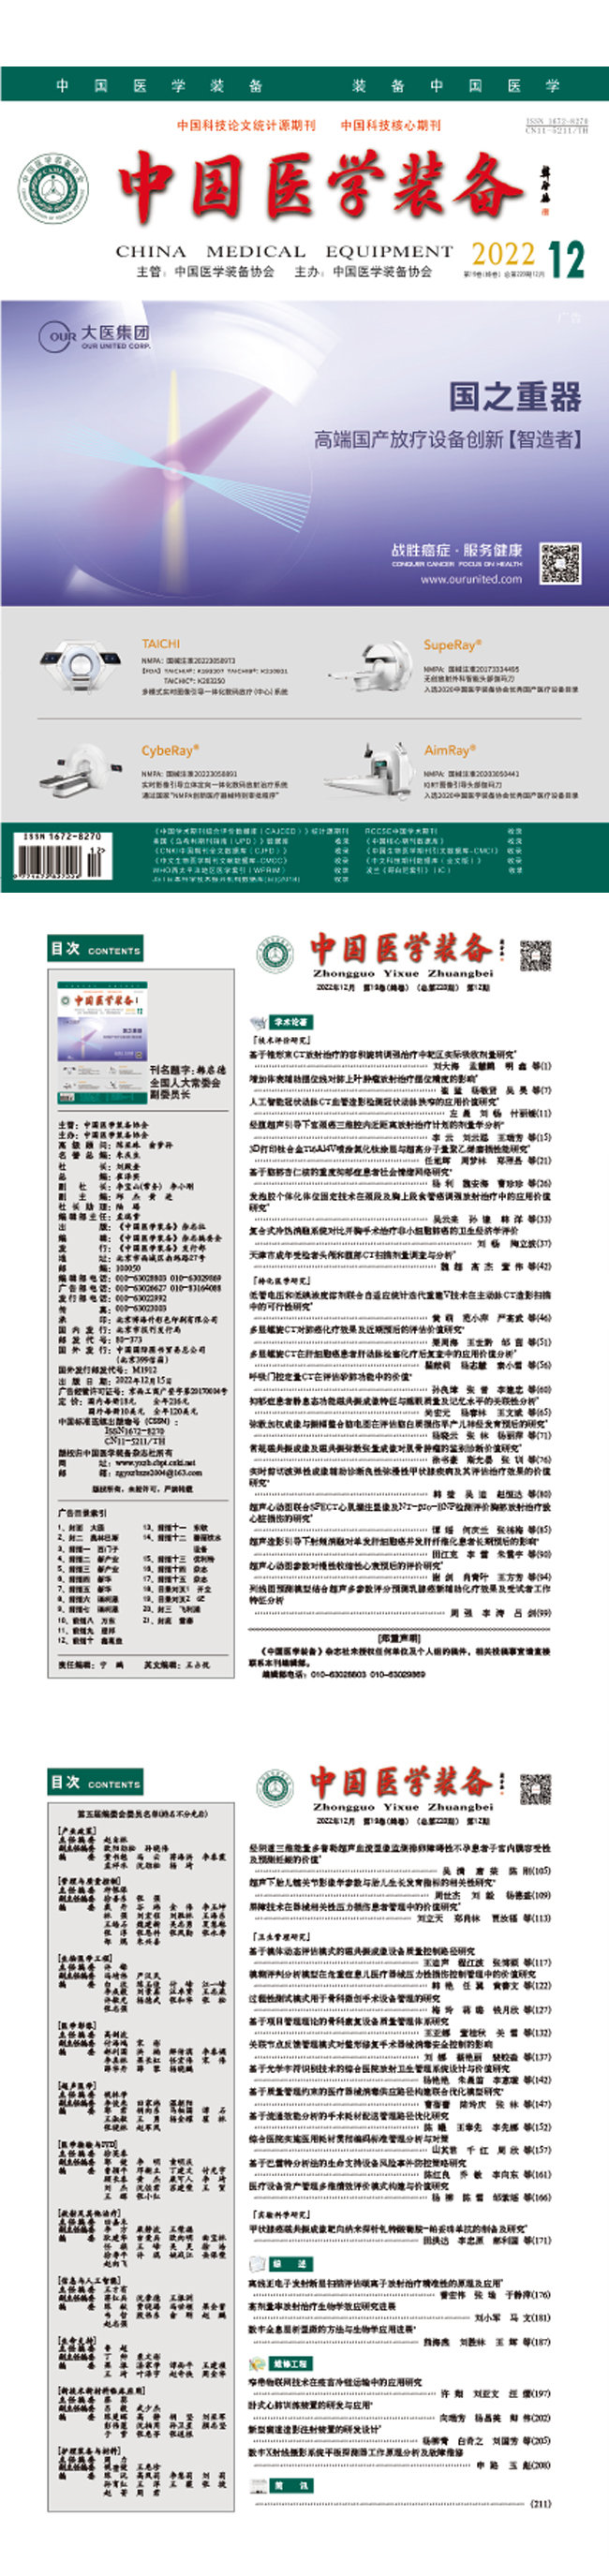 《中国医学装备》2022年12期出版(图1)